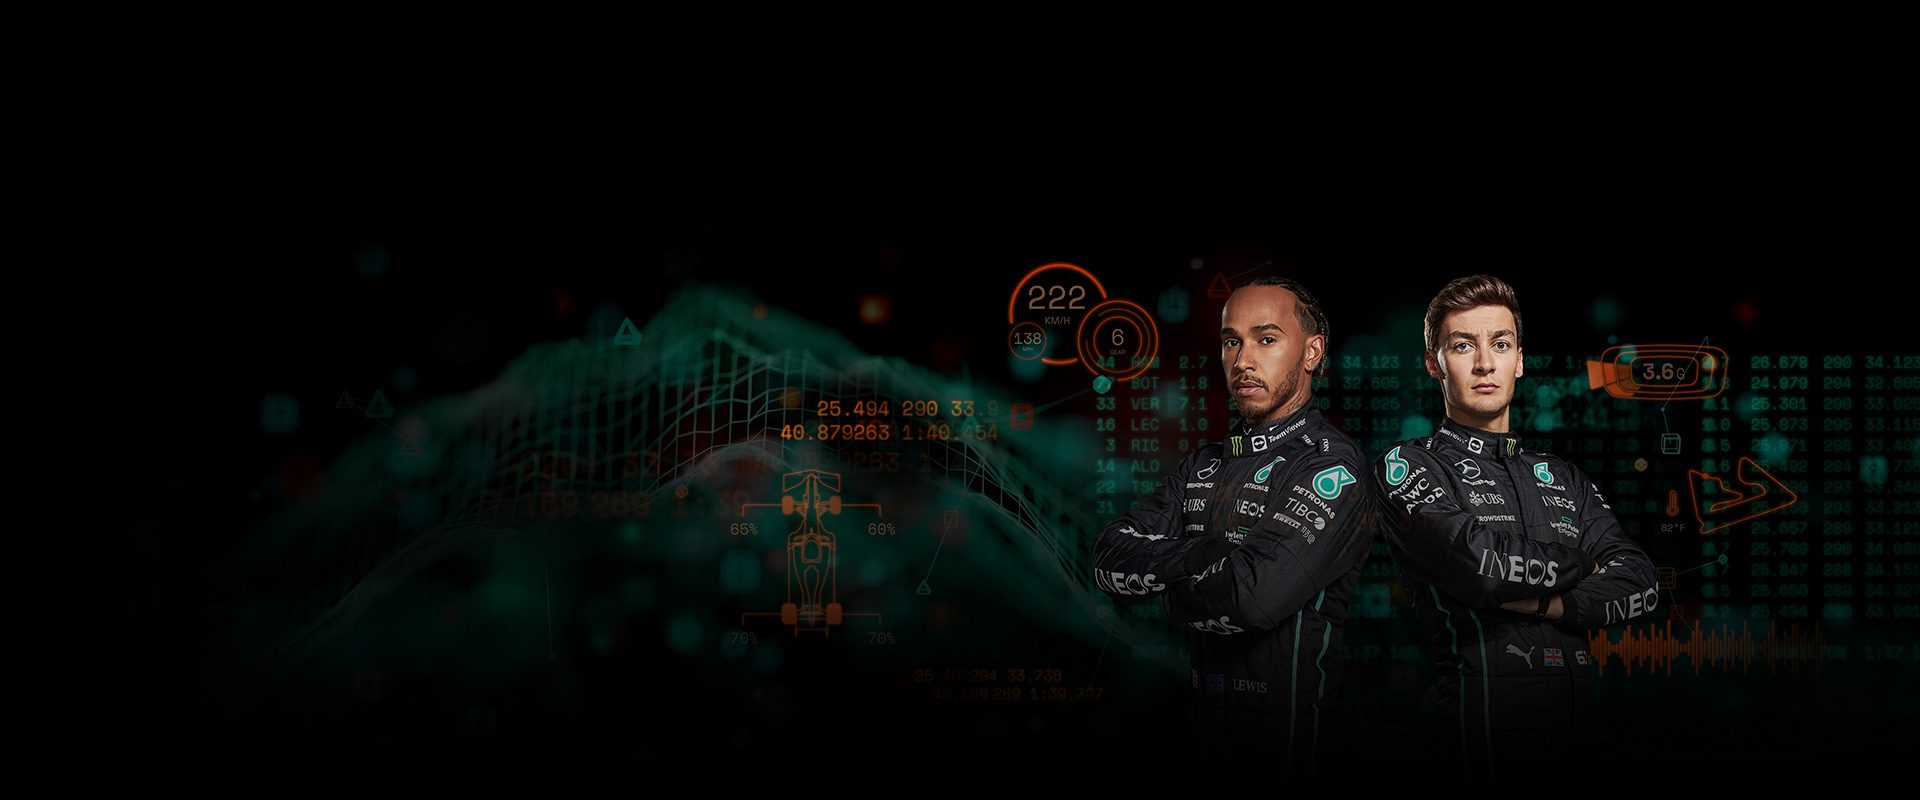 Lewis Hamilton und Valtteri Bottas vom Mercedes AMG Petronas F1 Rennteam